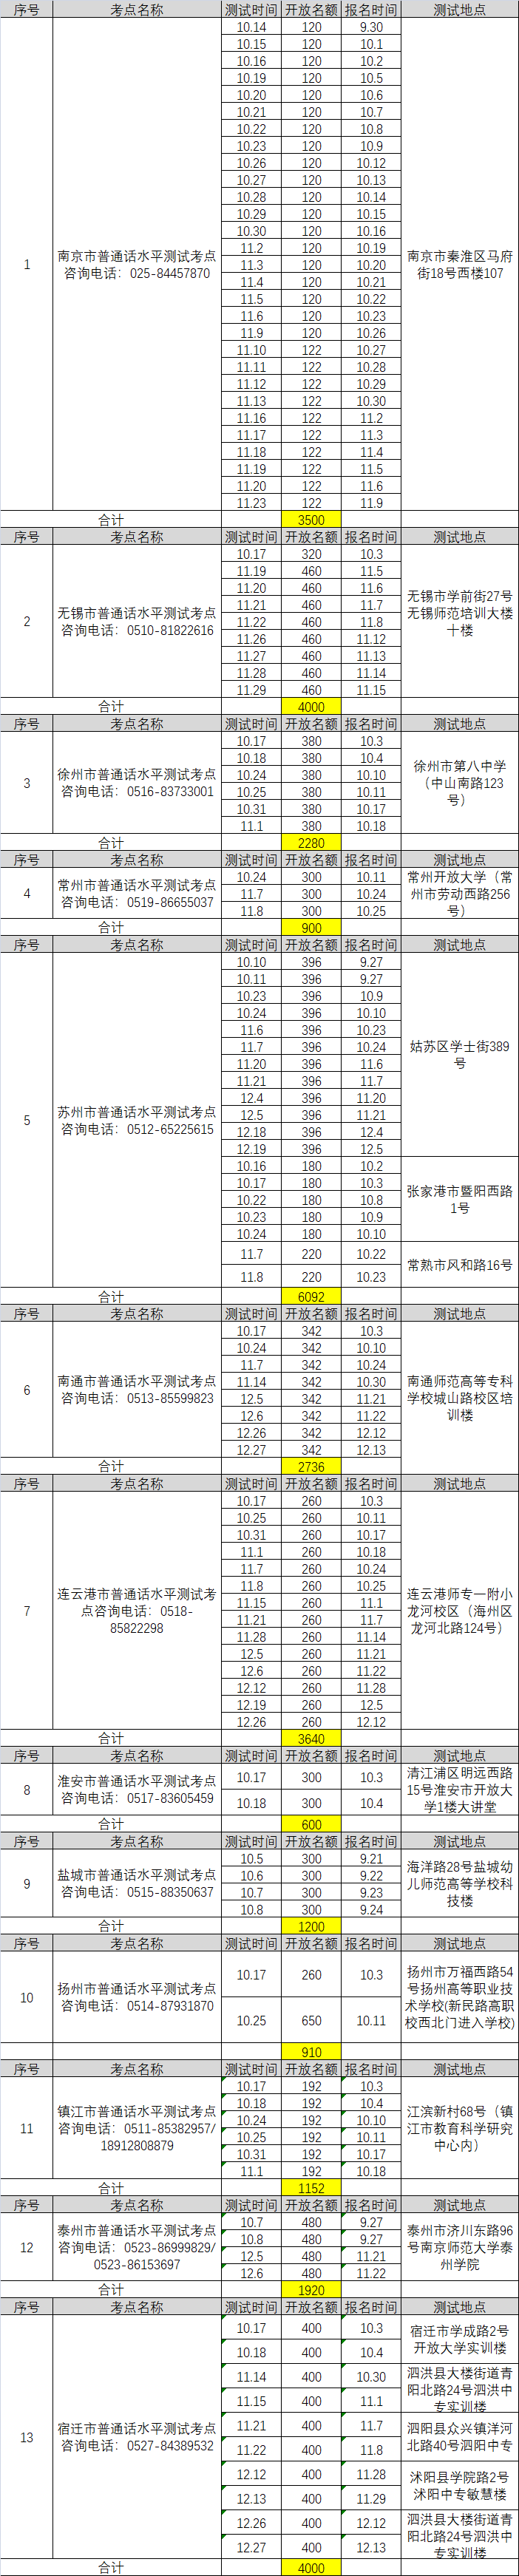 江苏省2020年下半年各设区市普通话测试计划